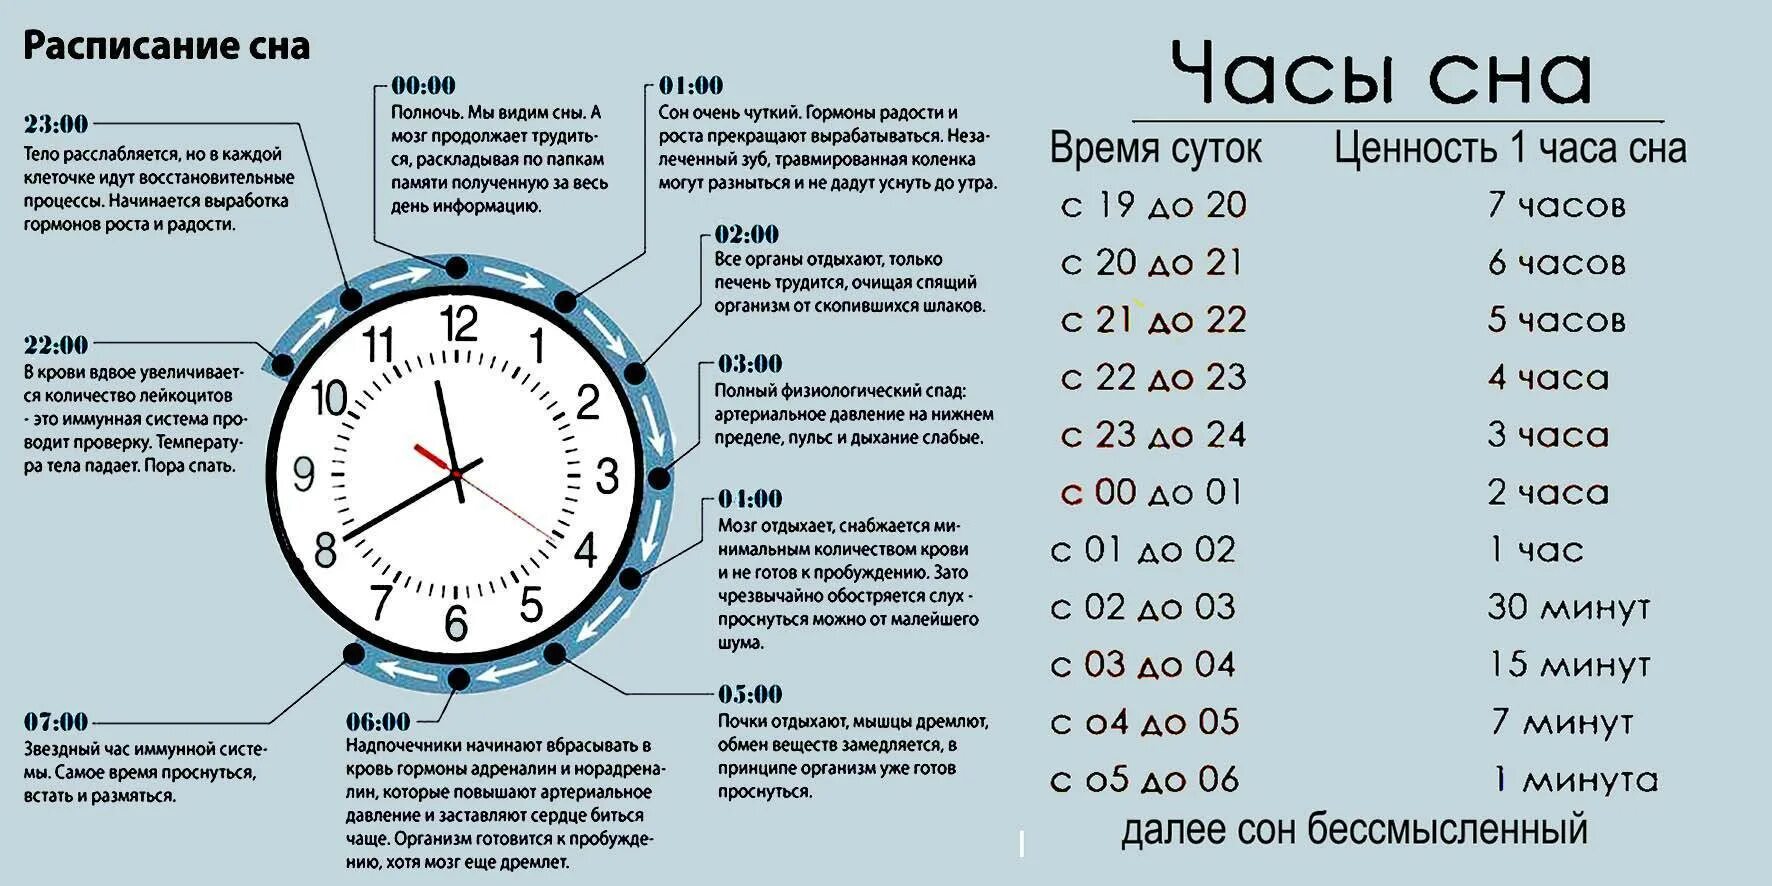 Надо на ночь сколько. Эффективность сна по часам таблица. Ценность часов сна таблица. Ценность сна по часам таблица днем. Значимость сна по часам таблица.